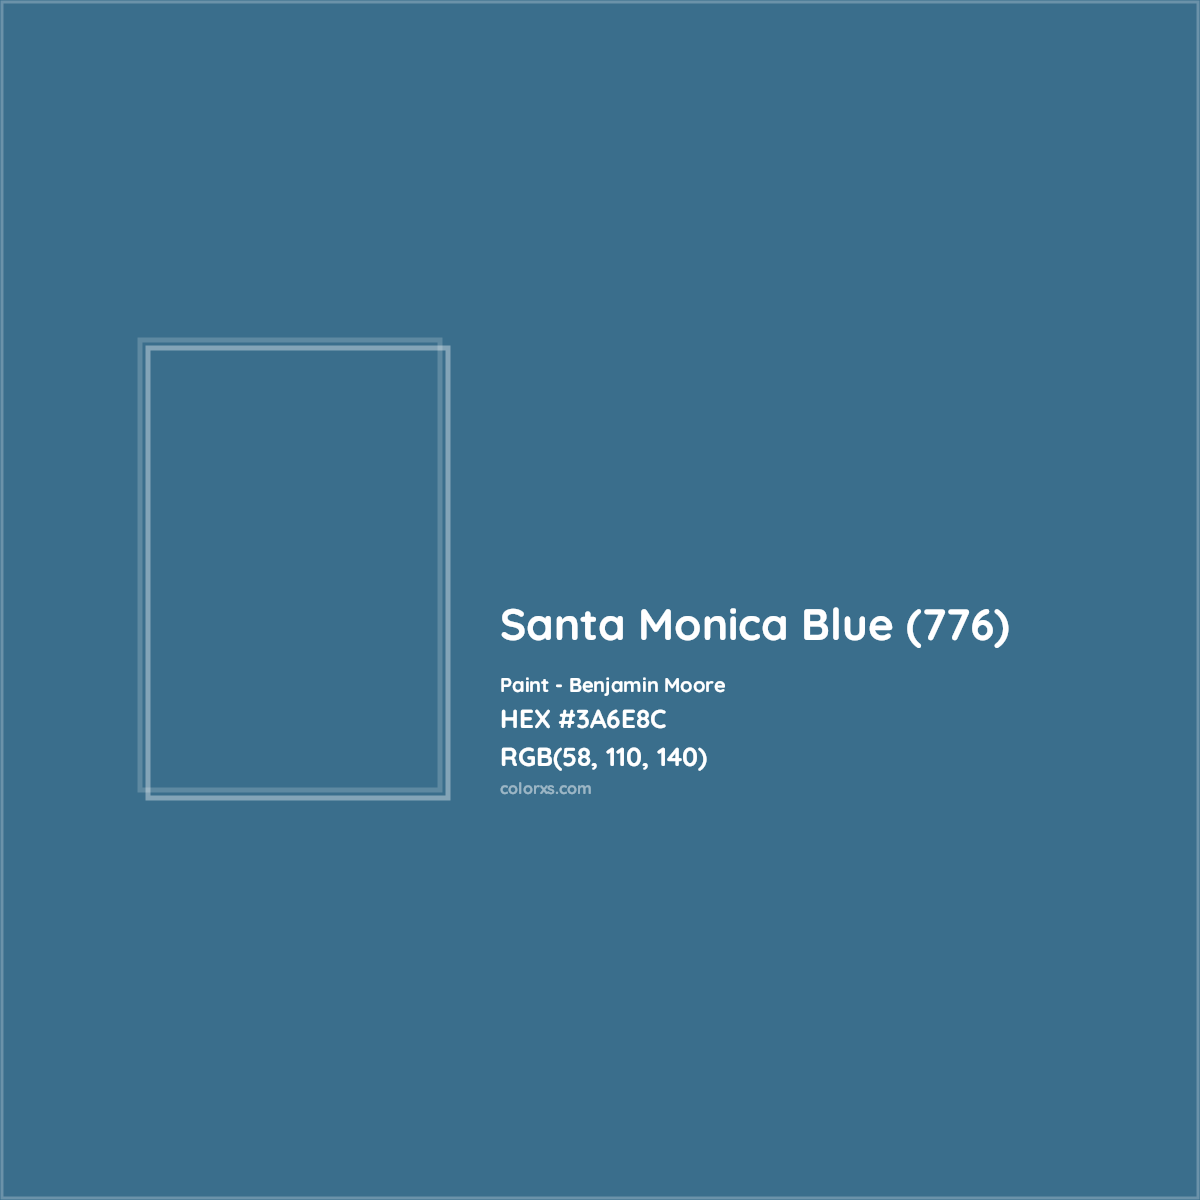 HEX #3A6E8C Santa Monica Blue (776) Paint Benjamin Moore - Color Code